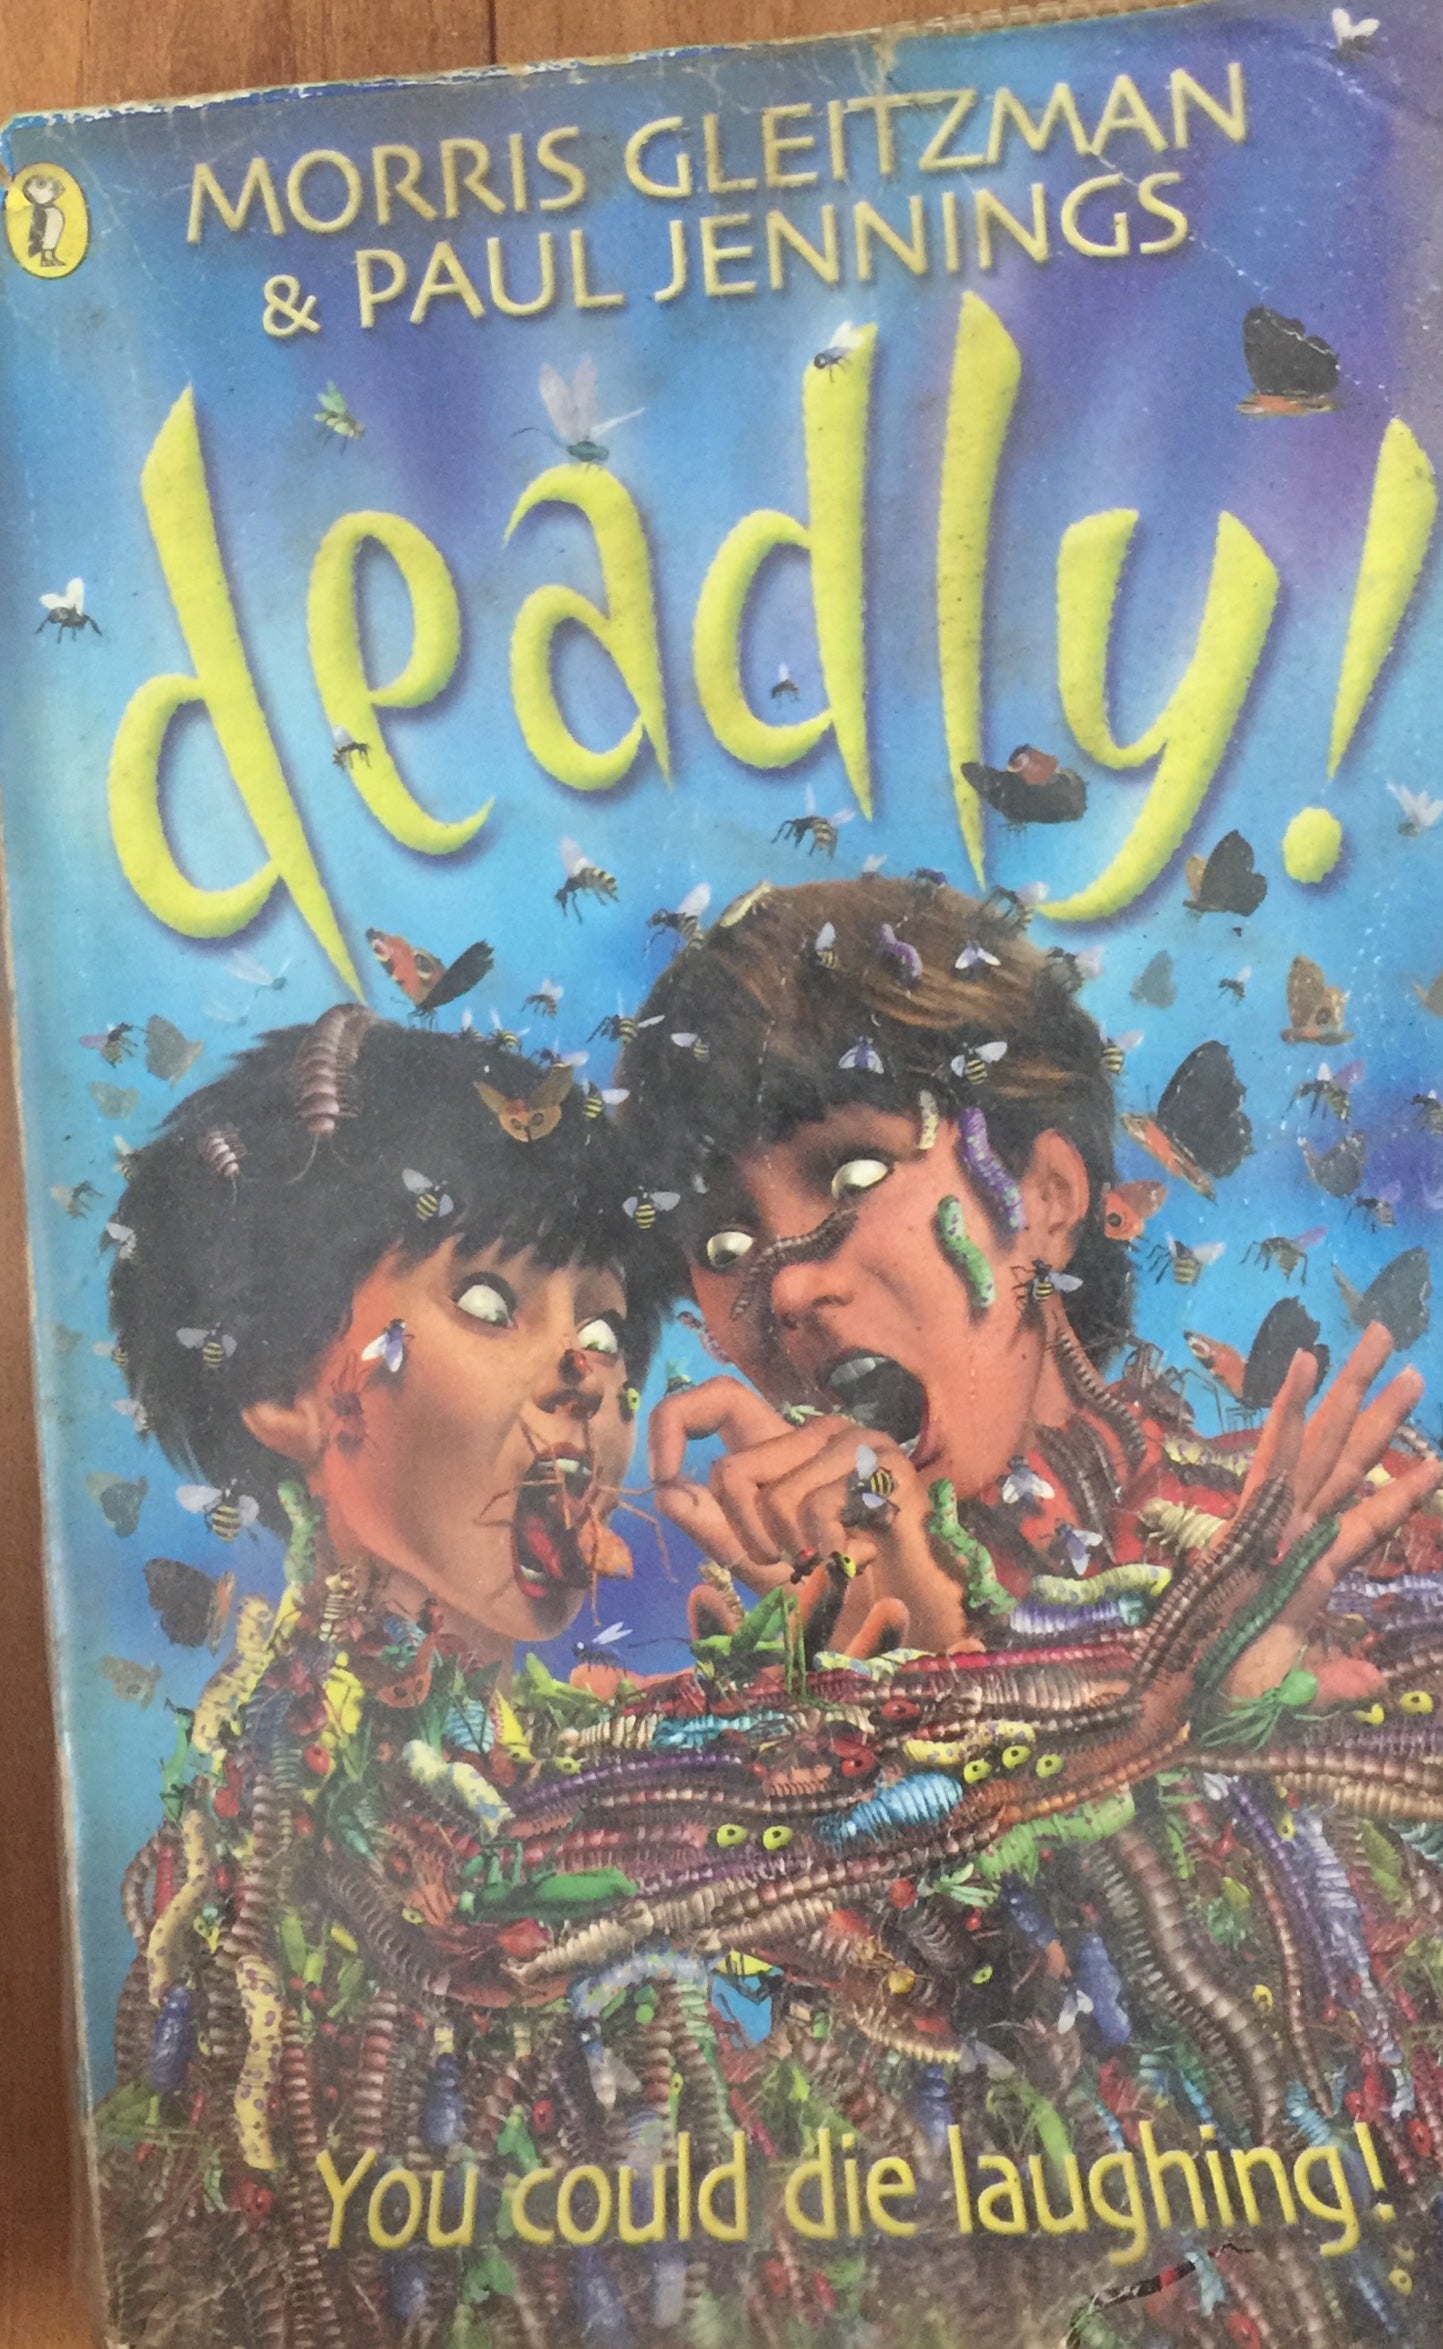 Deadly by Morris Gleitzman, Paul Jennings